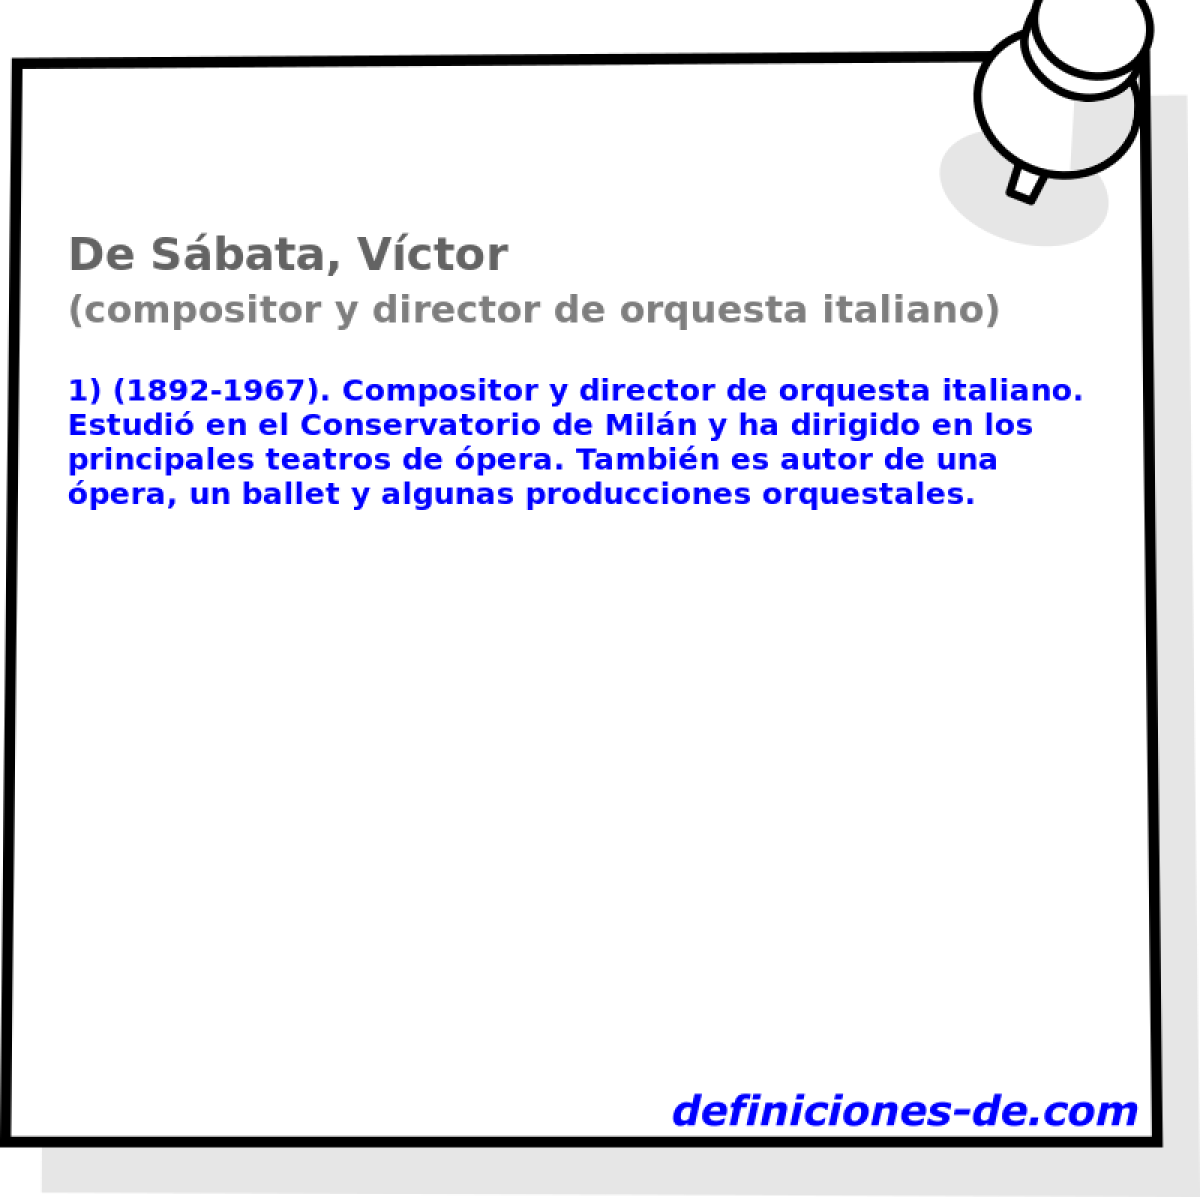 De Sbata, Vctor (compositor y director de orquesta italiano)